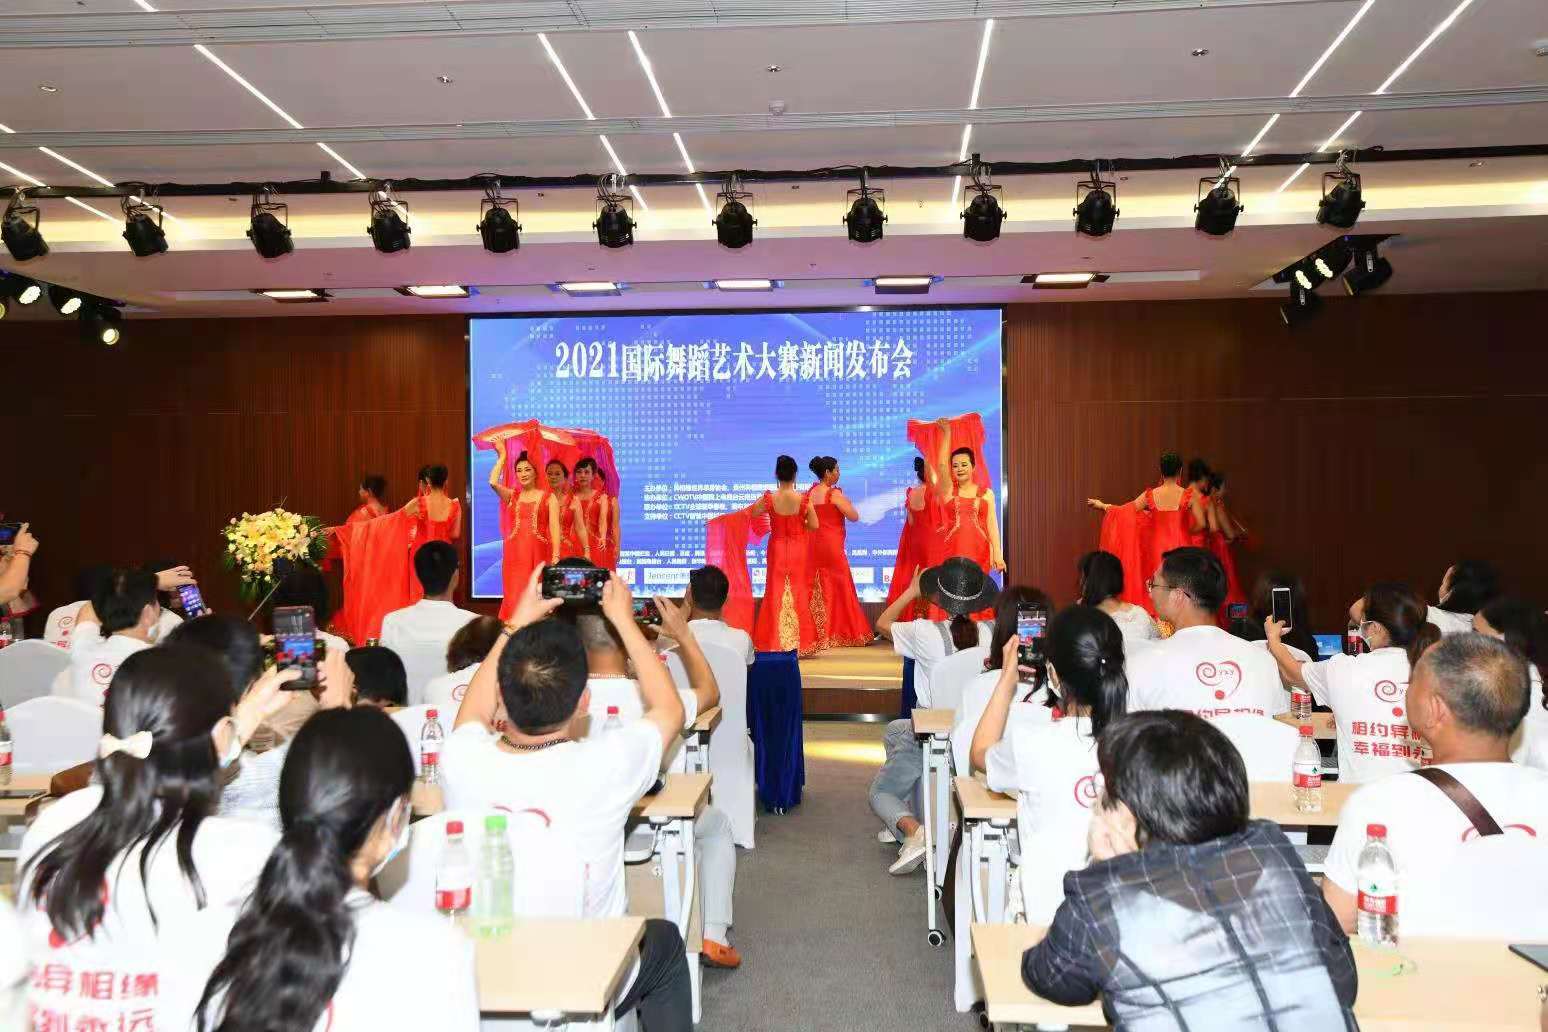 2021国际舞蹈艺术大赛新闻发布会在云南昆明举行